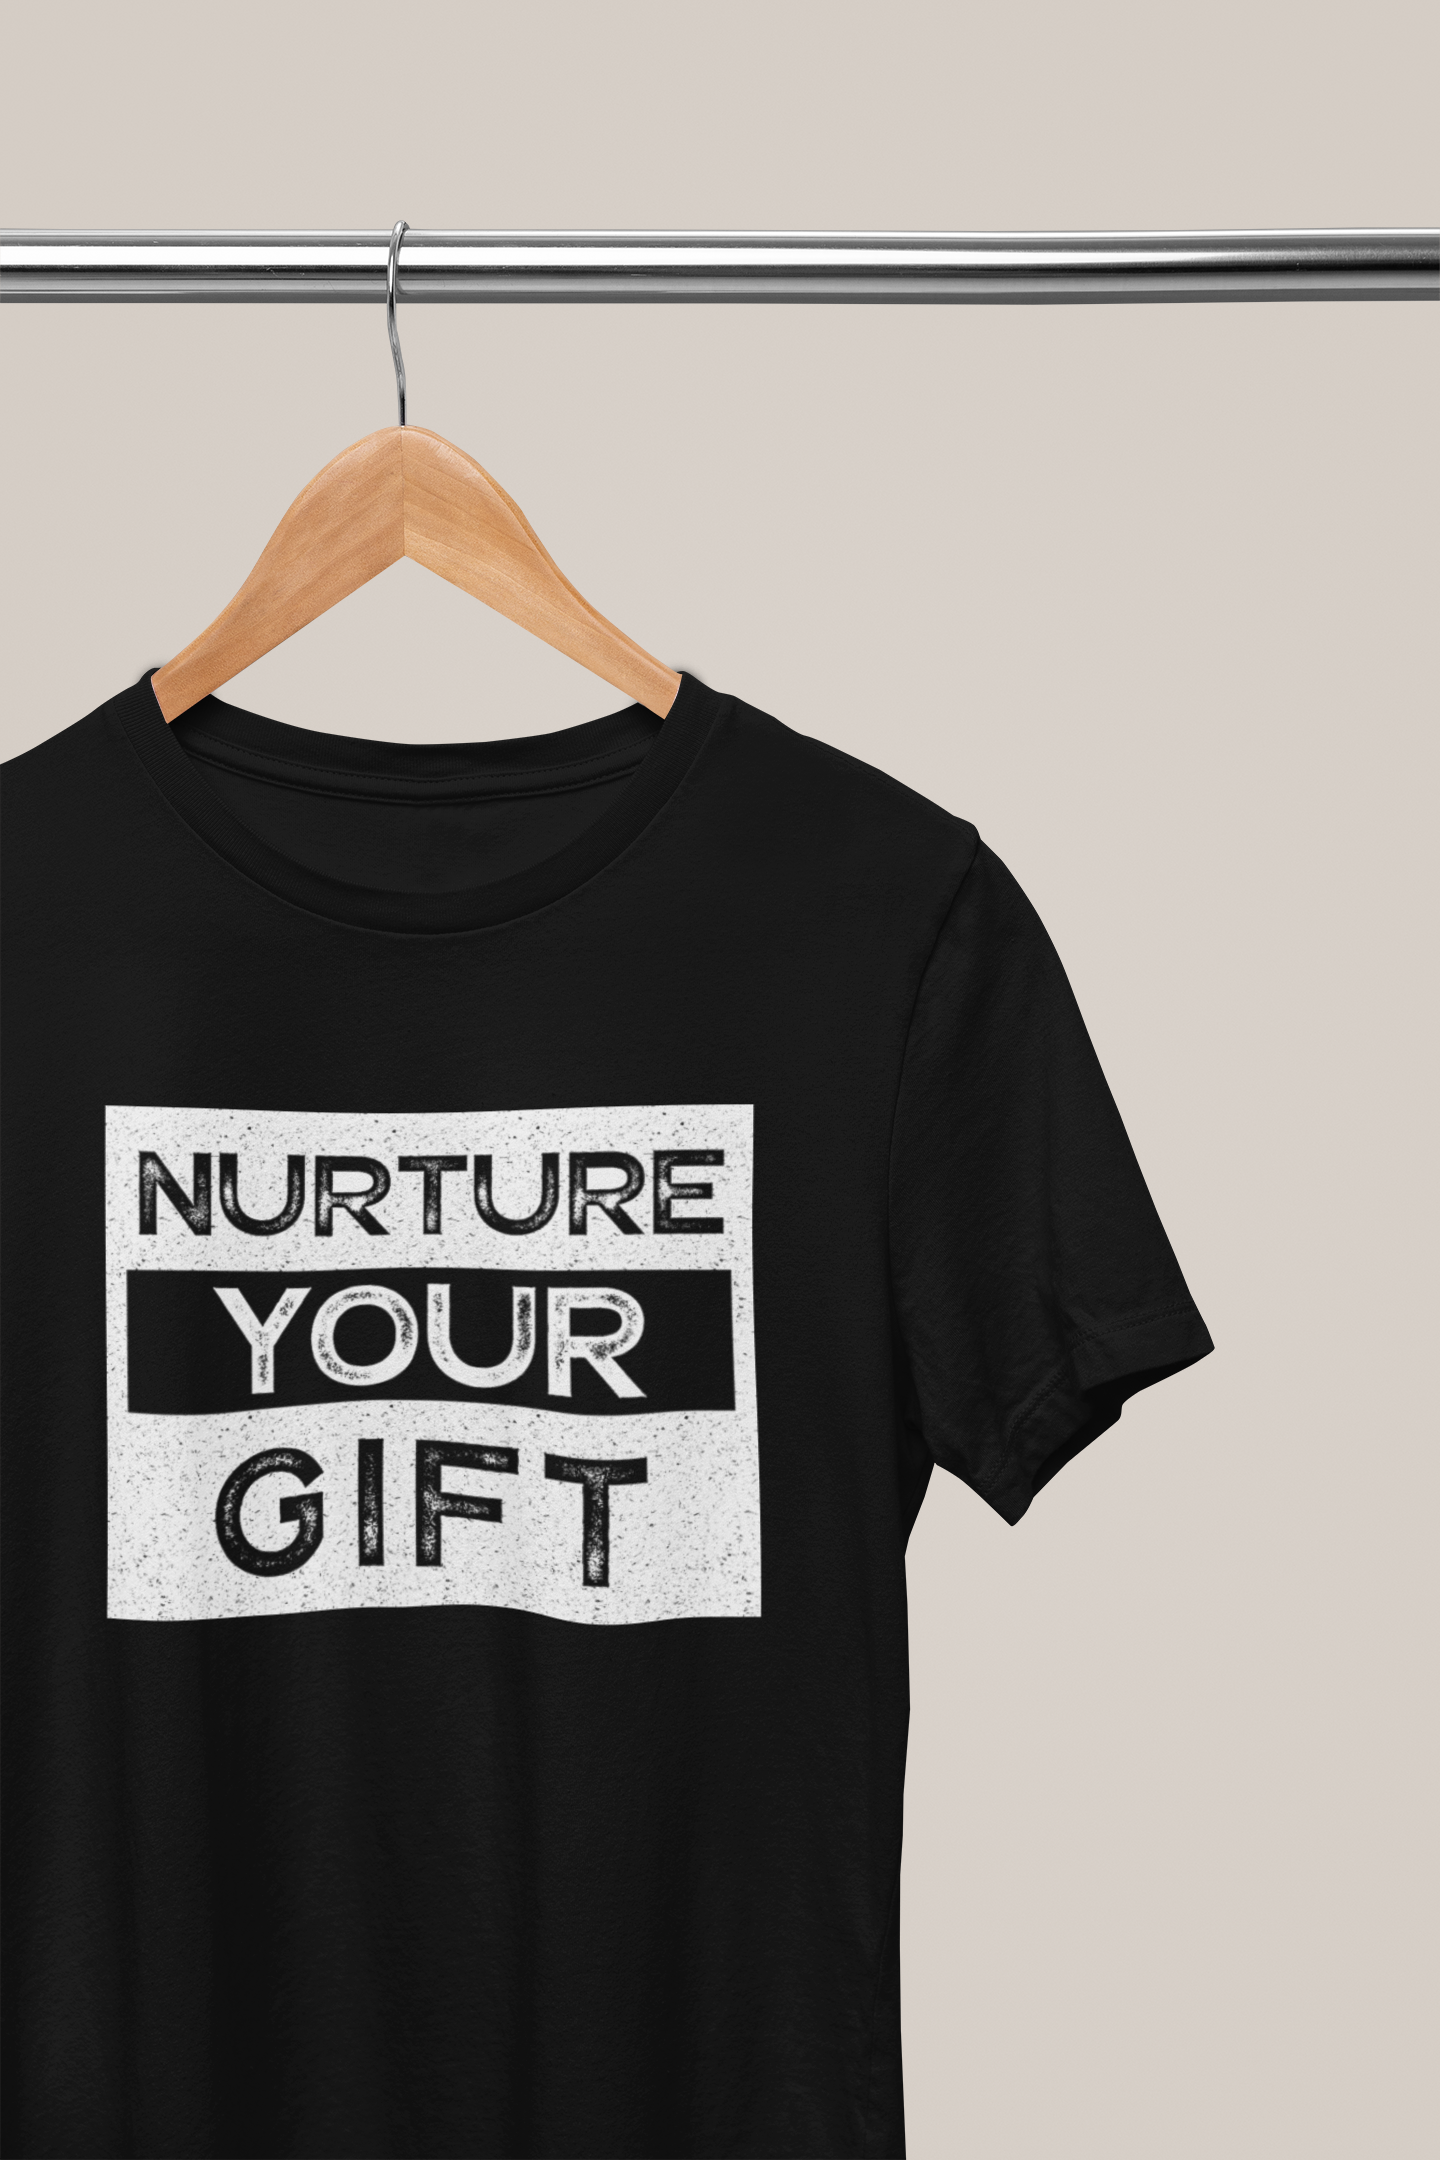 Nurtue Your Gift